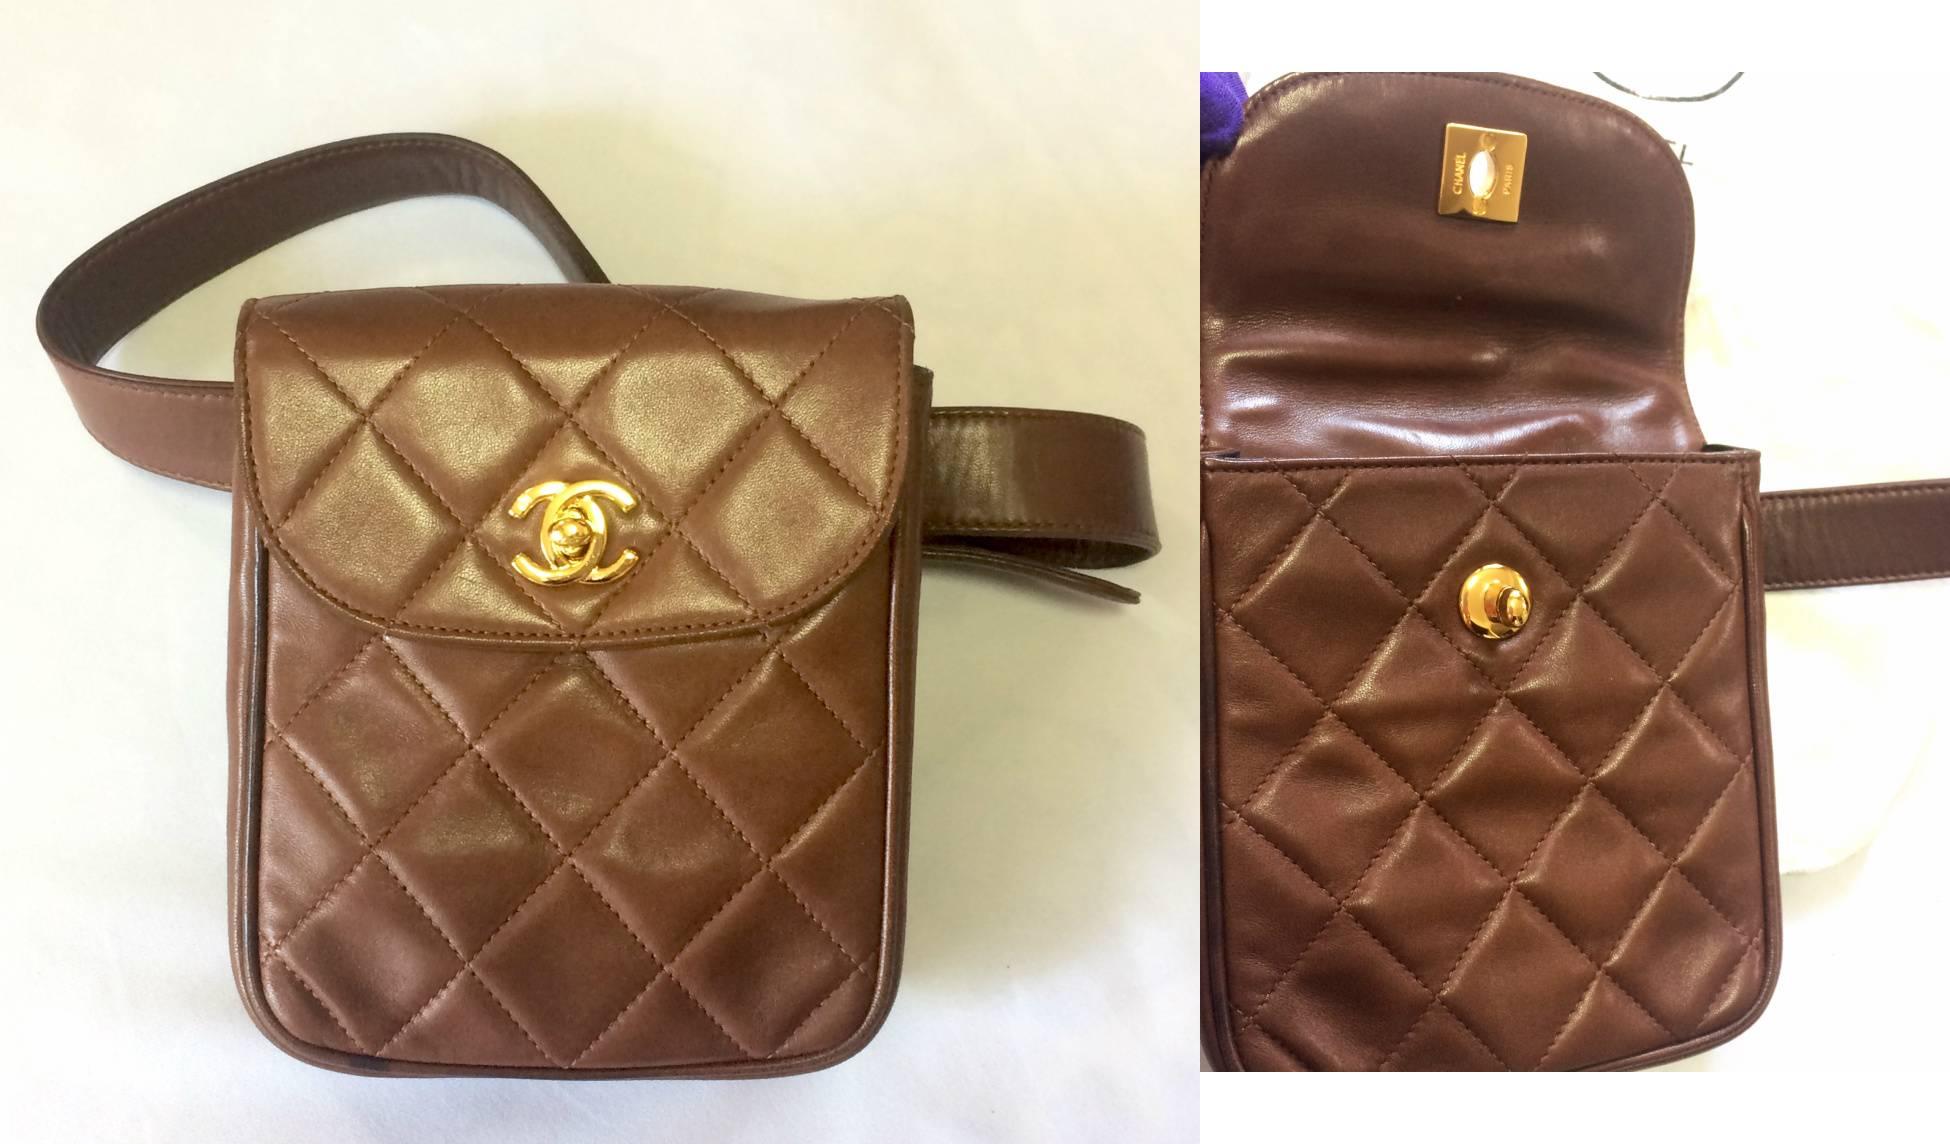 Vintage CHANEL brown leather vertical square shape belt bag, 2.55 fanny pack. 2